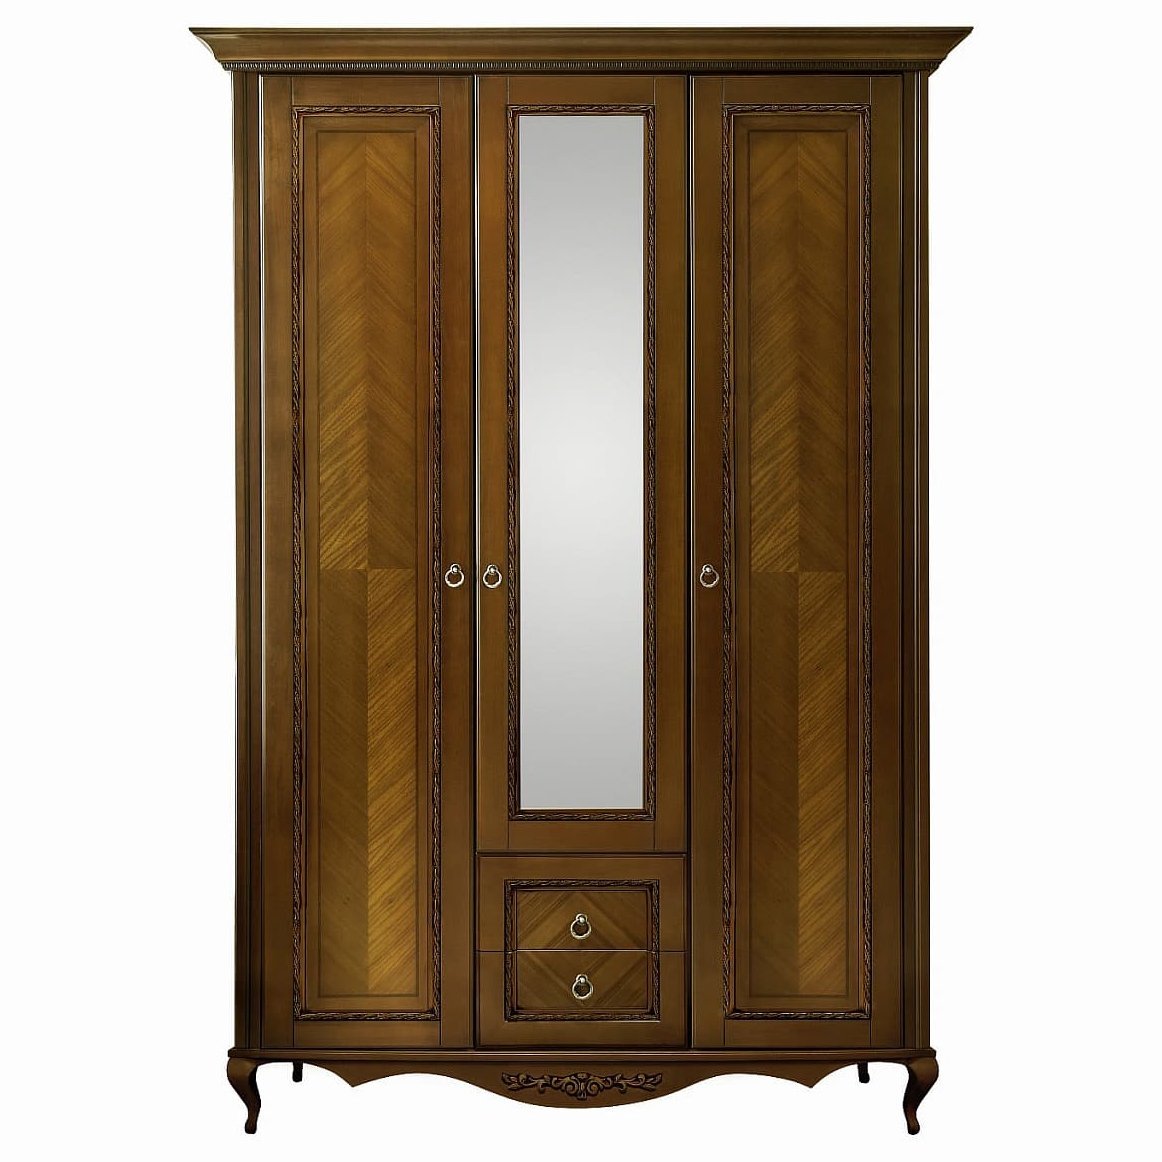 Шкаф платяной Timber Неаполь, 3-х дверный с зеркалом 159x65x227 см цвет: орех (T-523)T-523